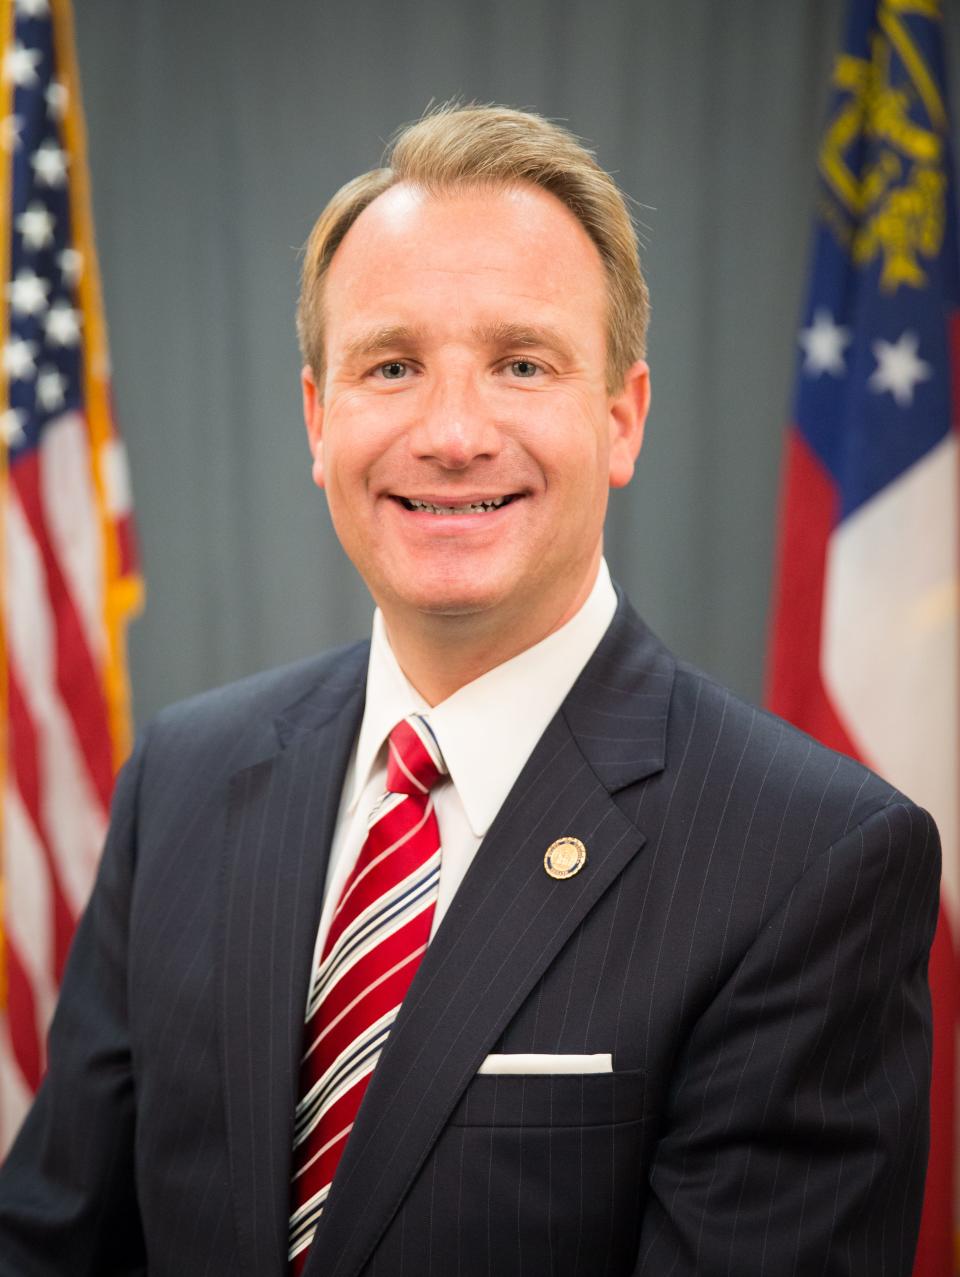 Georgia state Senator John Albers